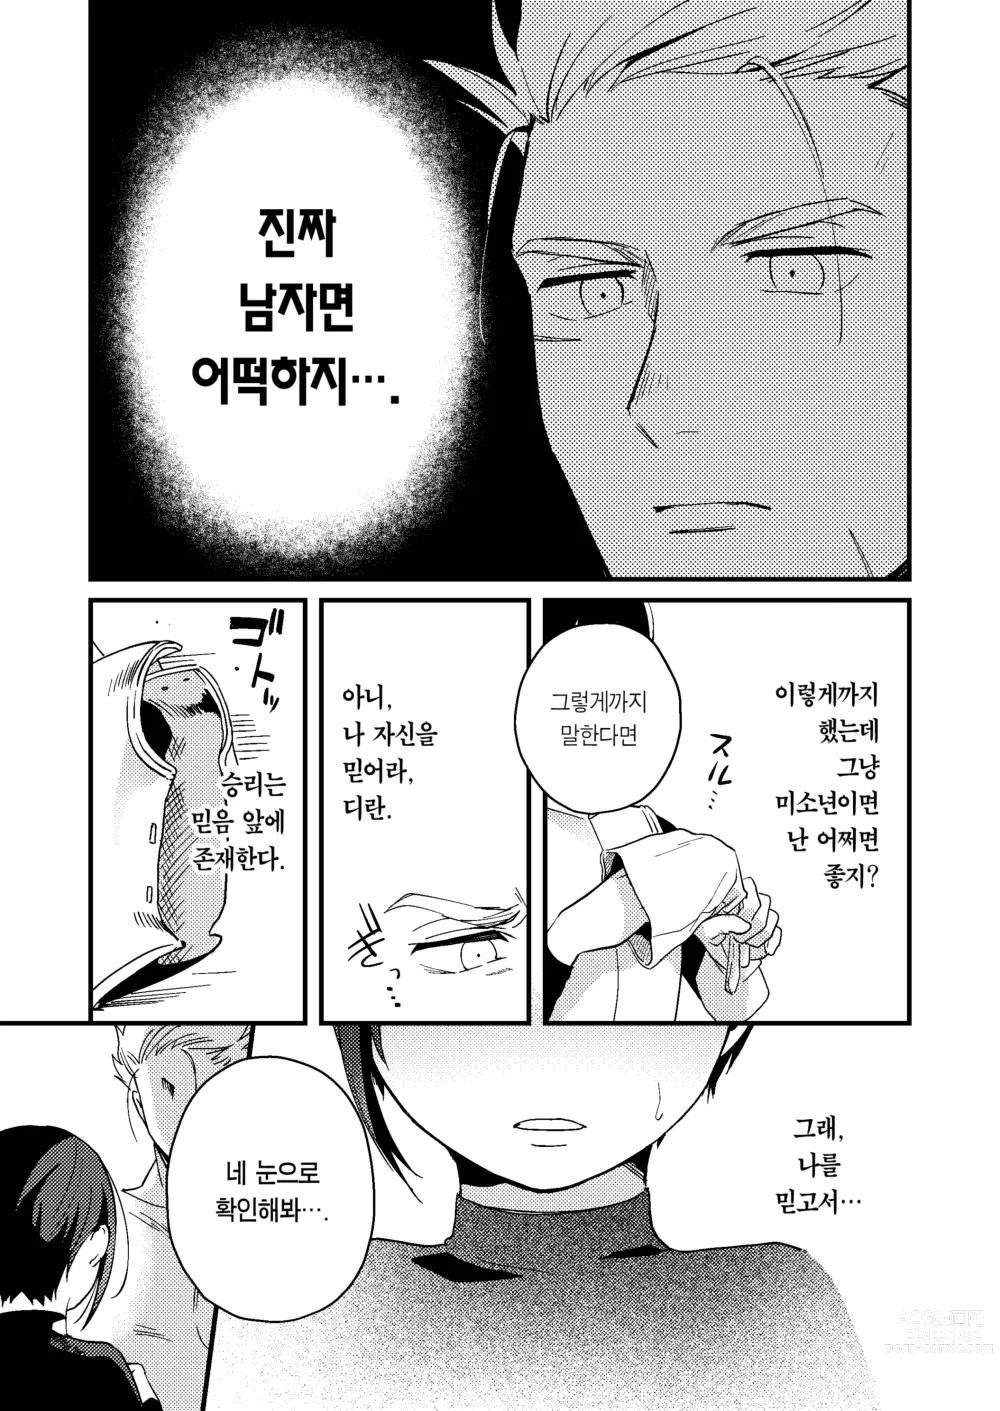 Page 12 of doujinshi 세계가 평화로워져서 용사(사실은 ♀)에게 구혼한 결과